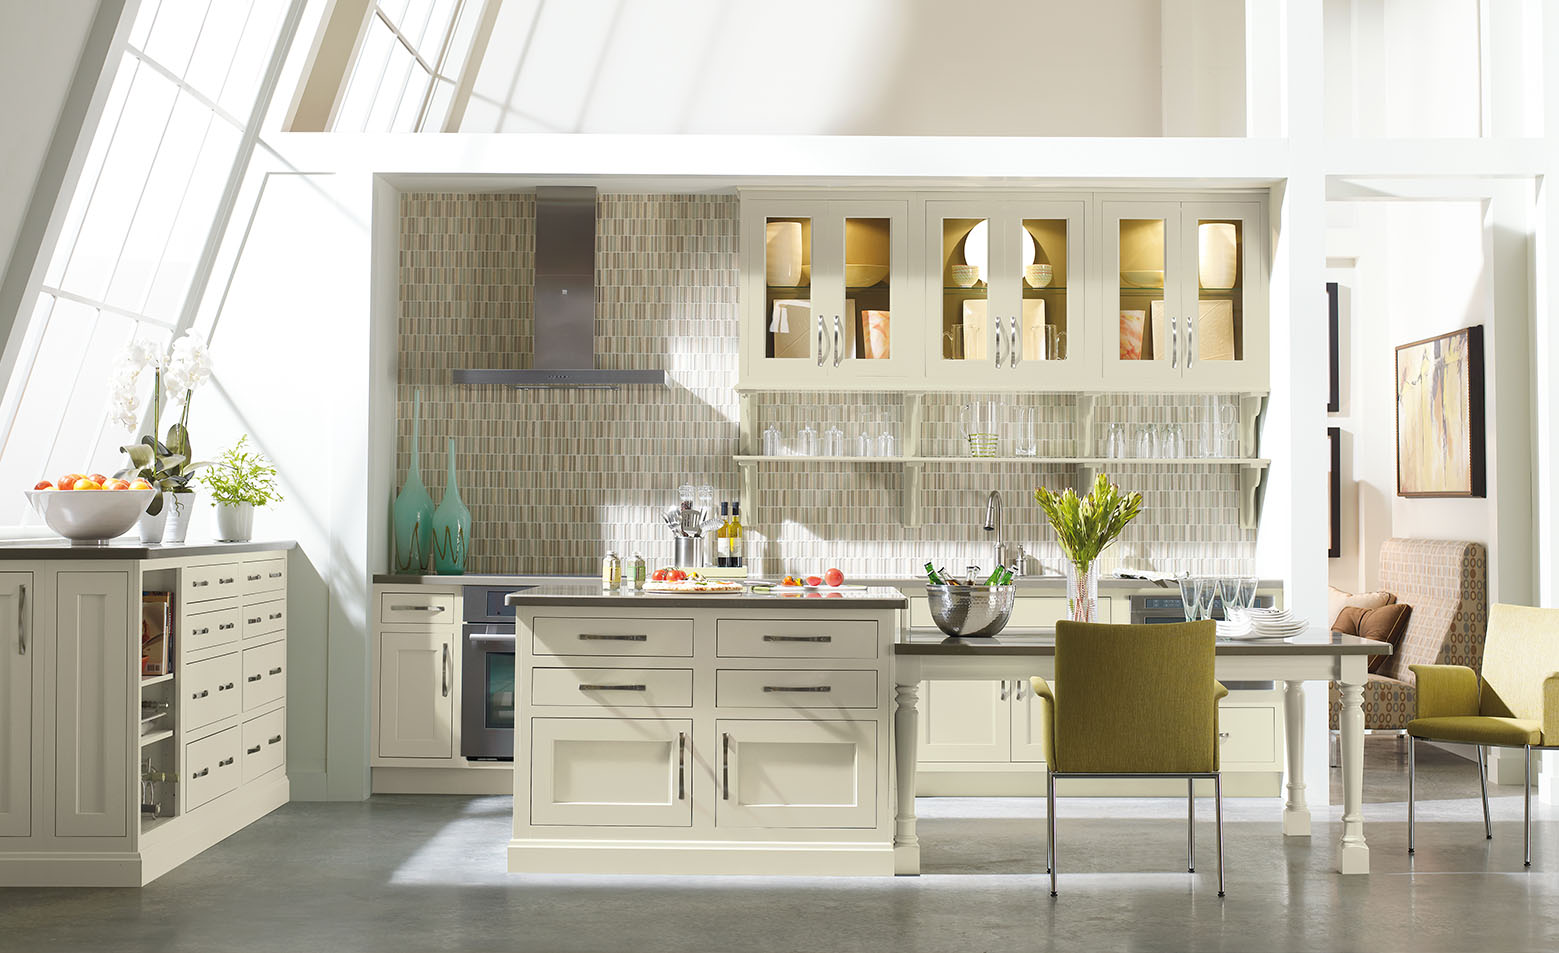 Von Tobel new modern kitchen design